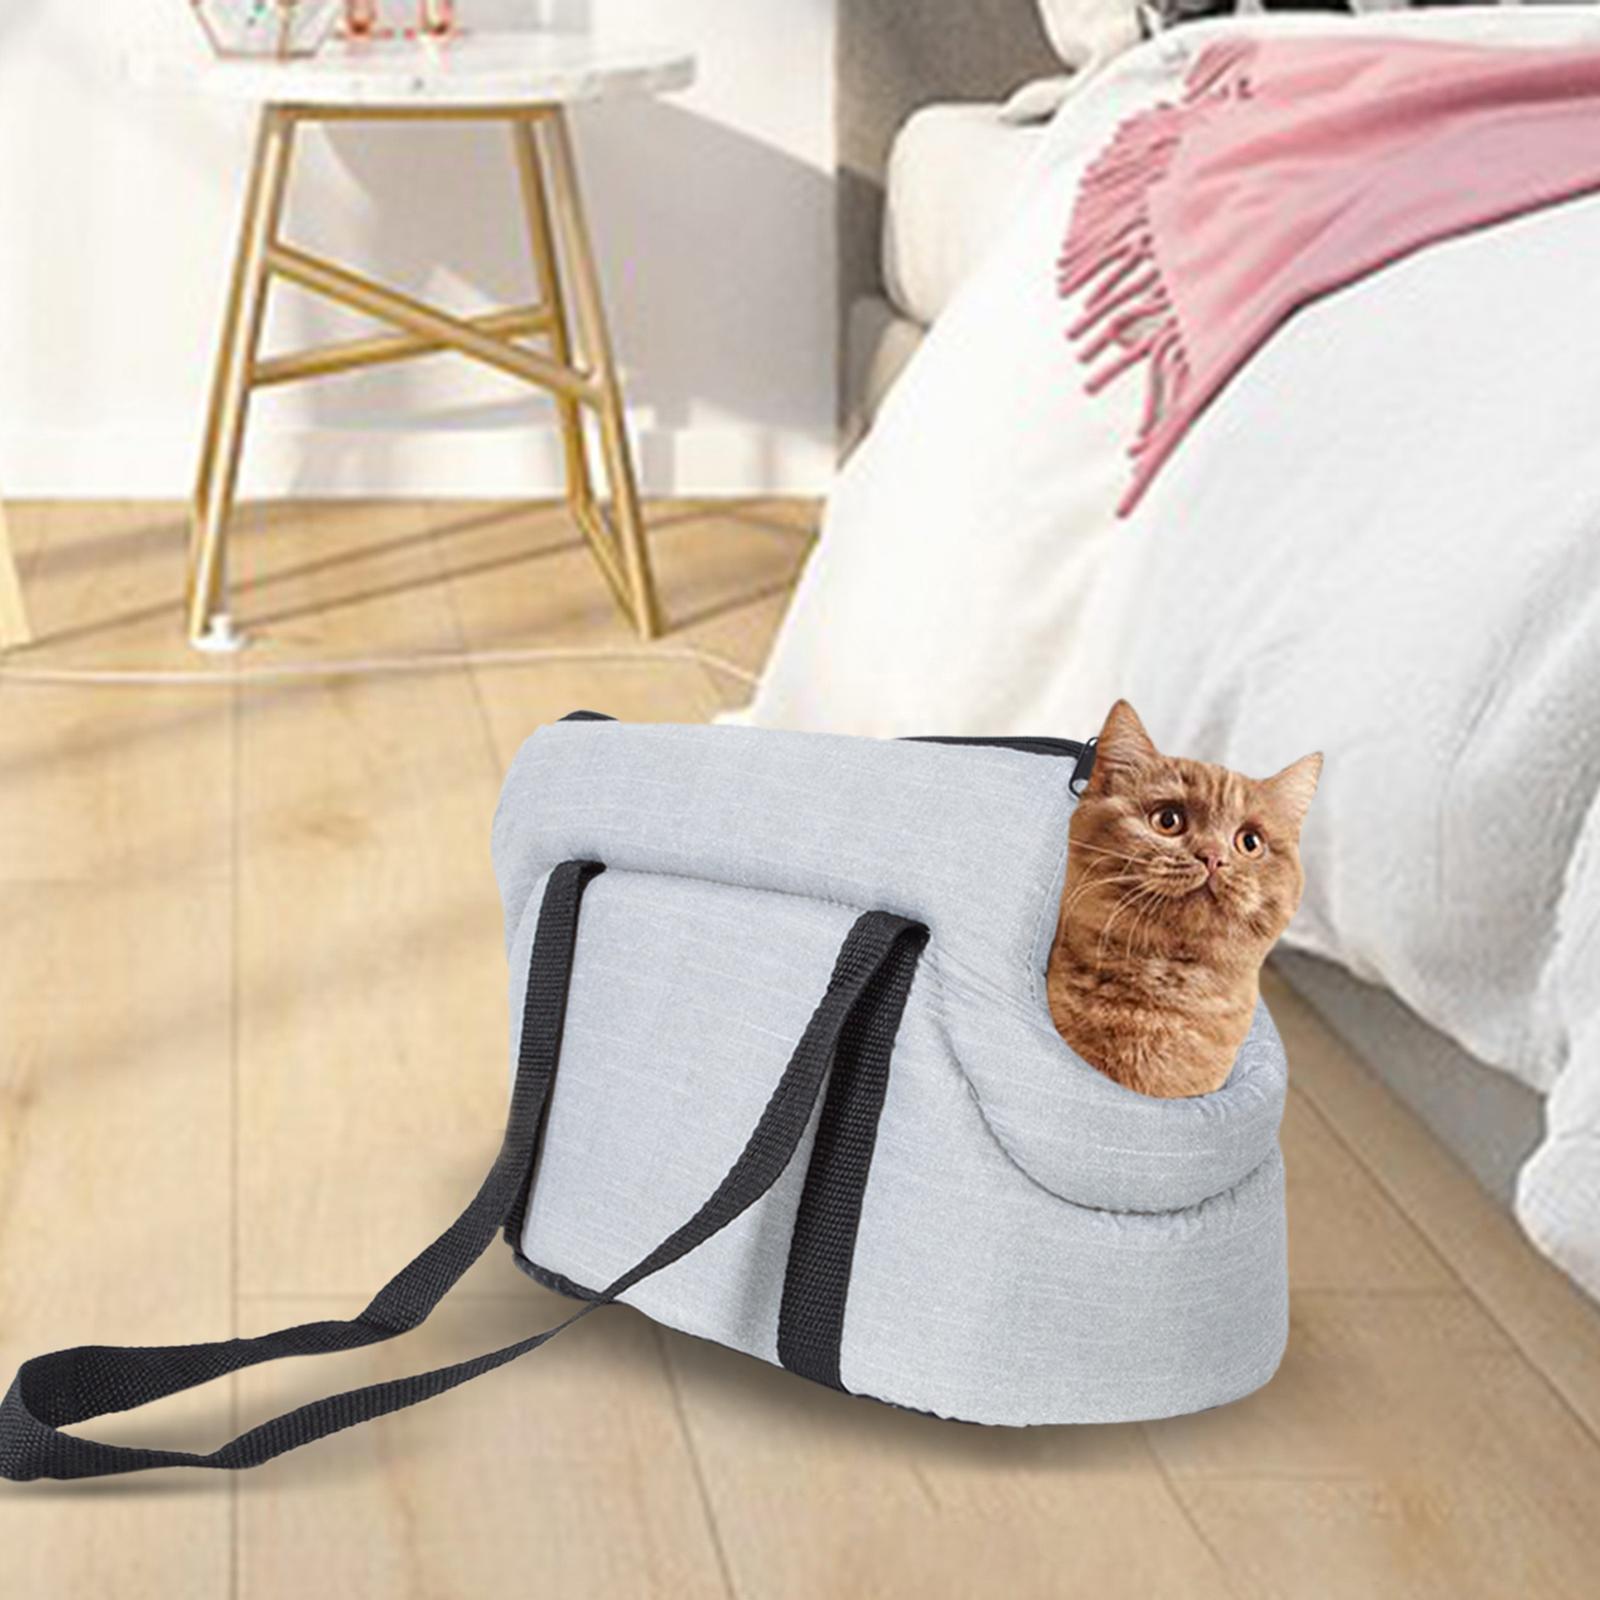 Ailong Portable Pet Carrier Travel Bag Shoulder Bag Breathable Hiking Dog